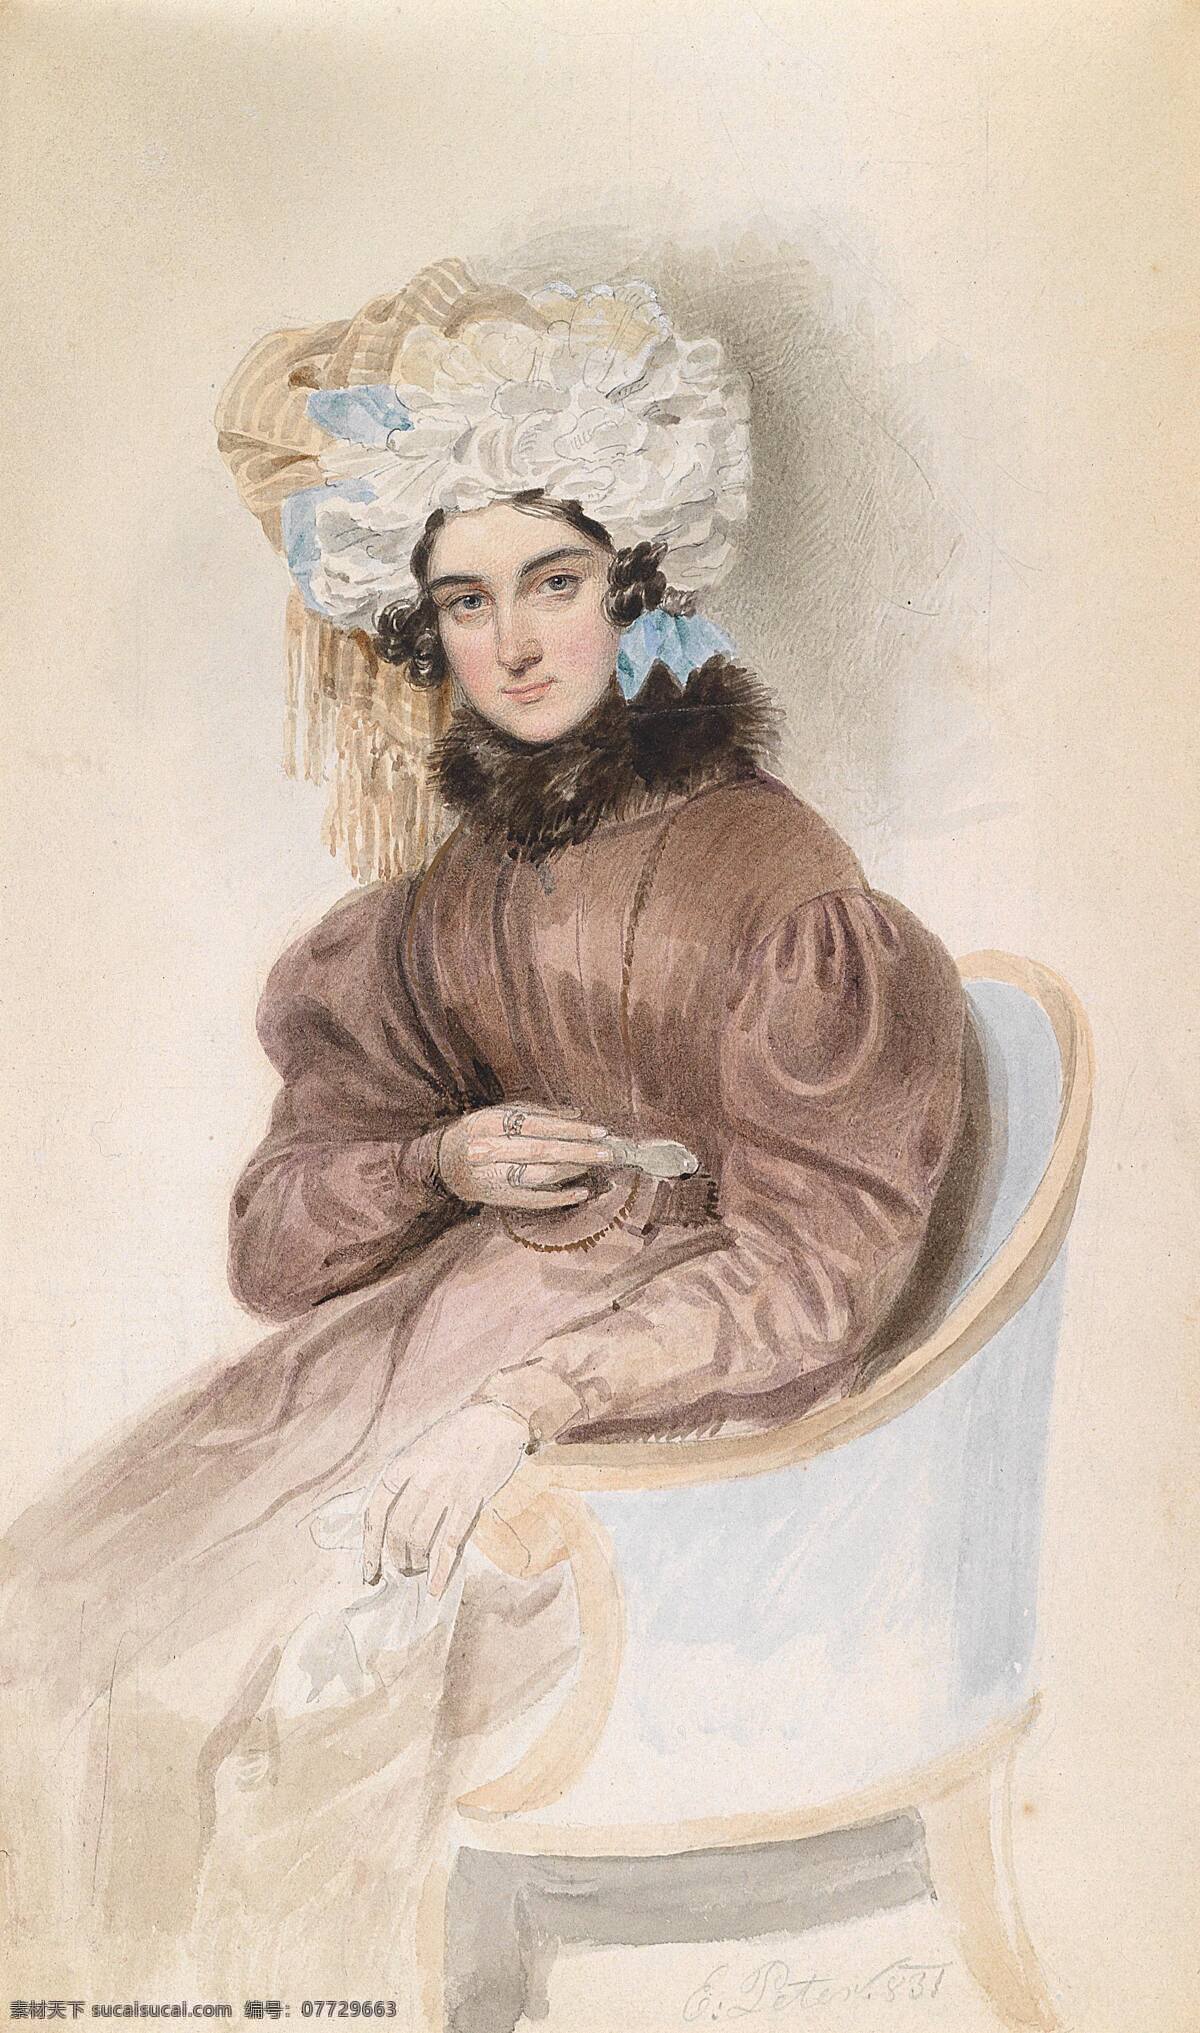 贵妇人 绘画书法 水彩画 文化艺术 设计素材 模板下载 贵族之家 年轻的少妇 坐像 冬服 卷曲的头发 世纪